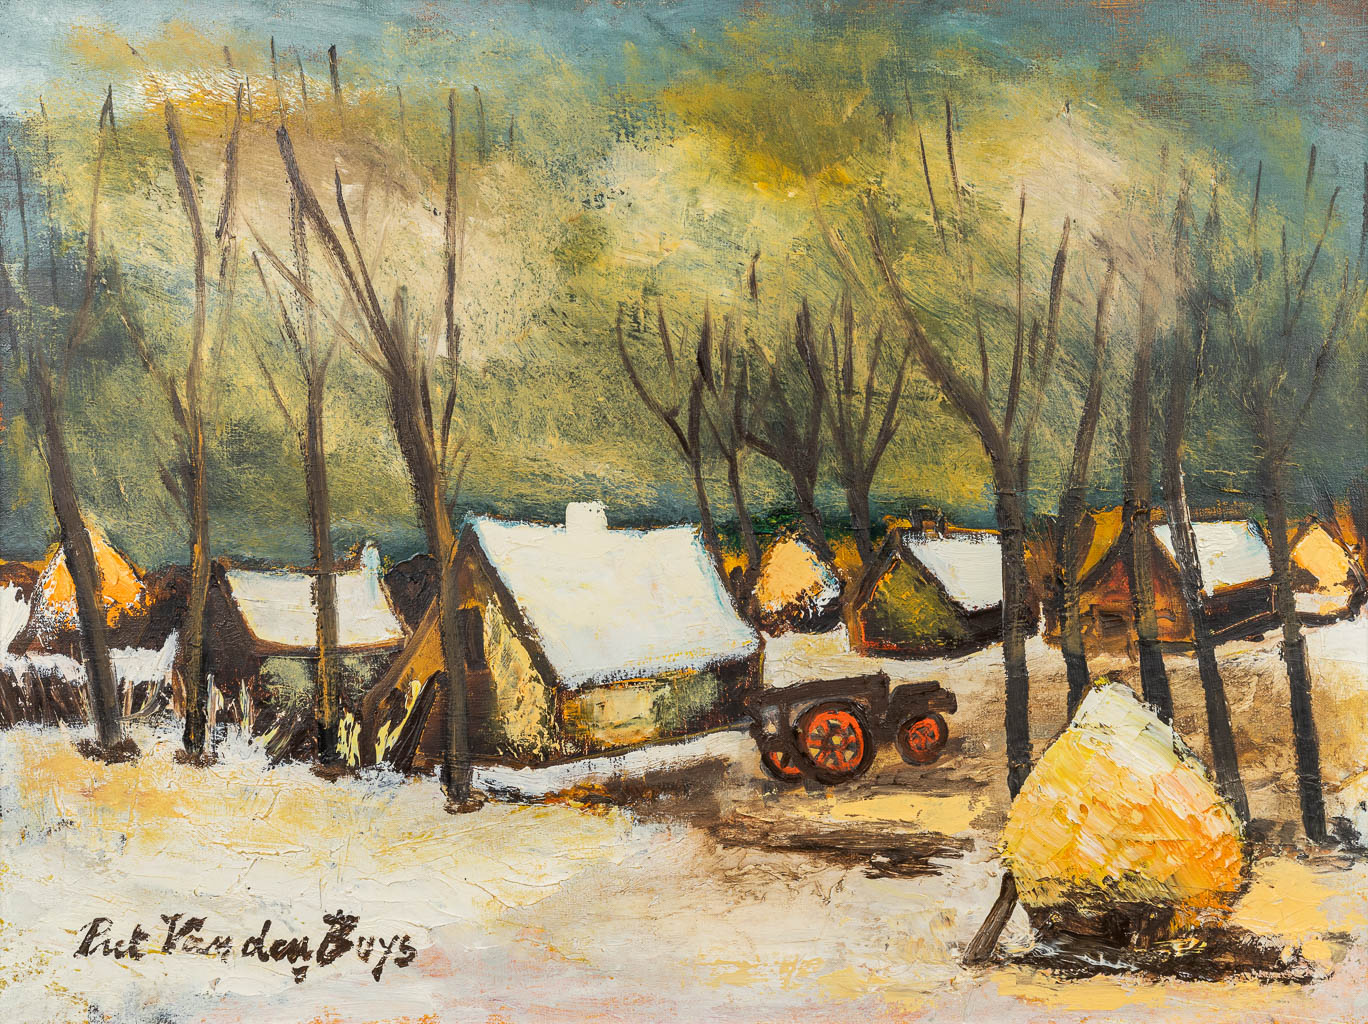 Piet VAN DEN BUYS (1935) 'Winterlandscape' a painting, oil on canvas. (80 x 60 cm)